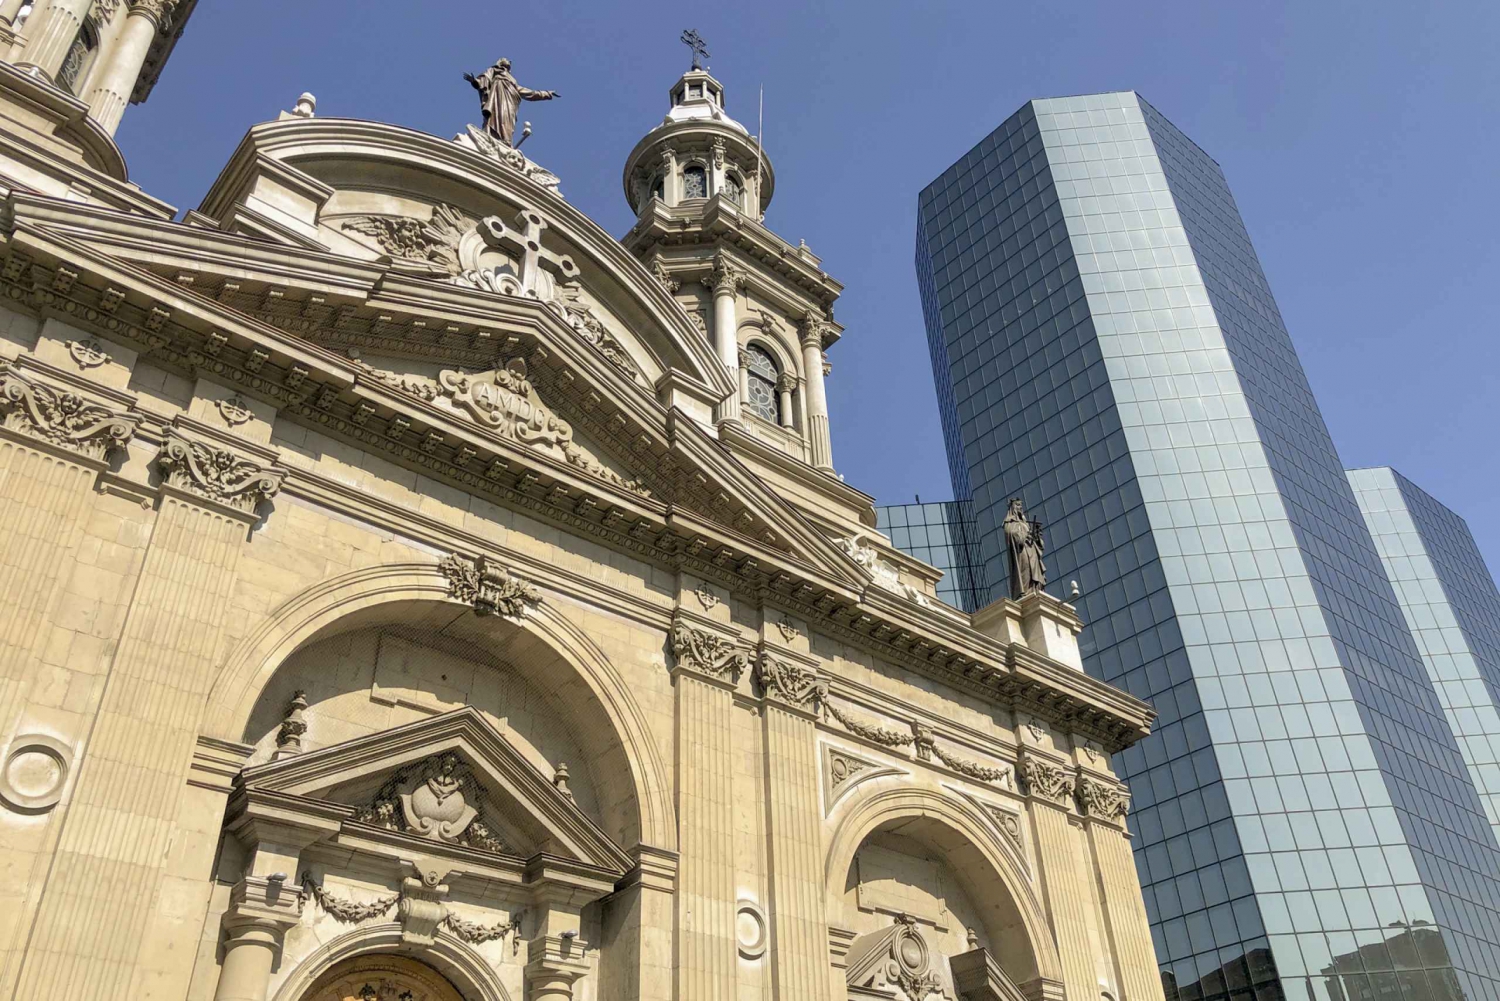 Visite officielle du clocher de la cathédrale de Santiago